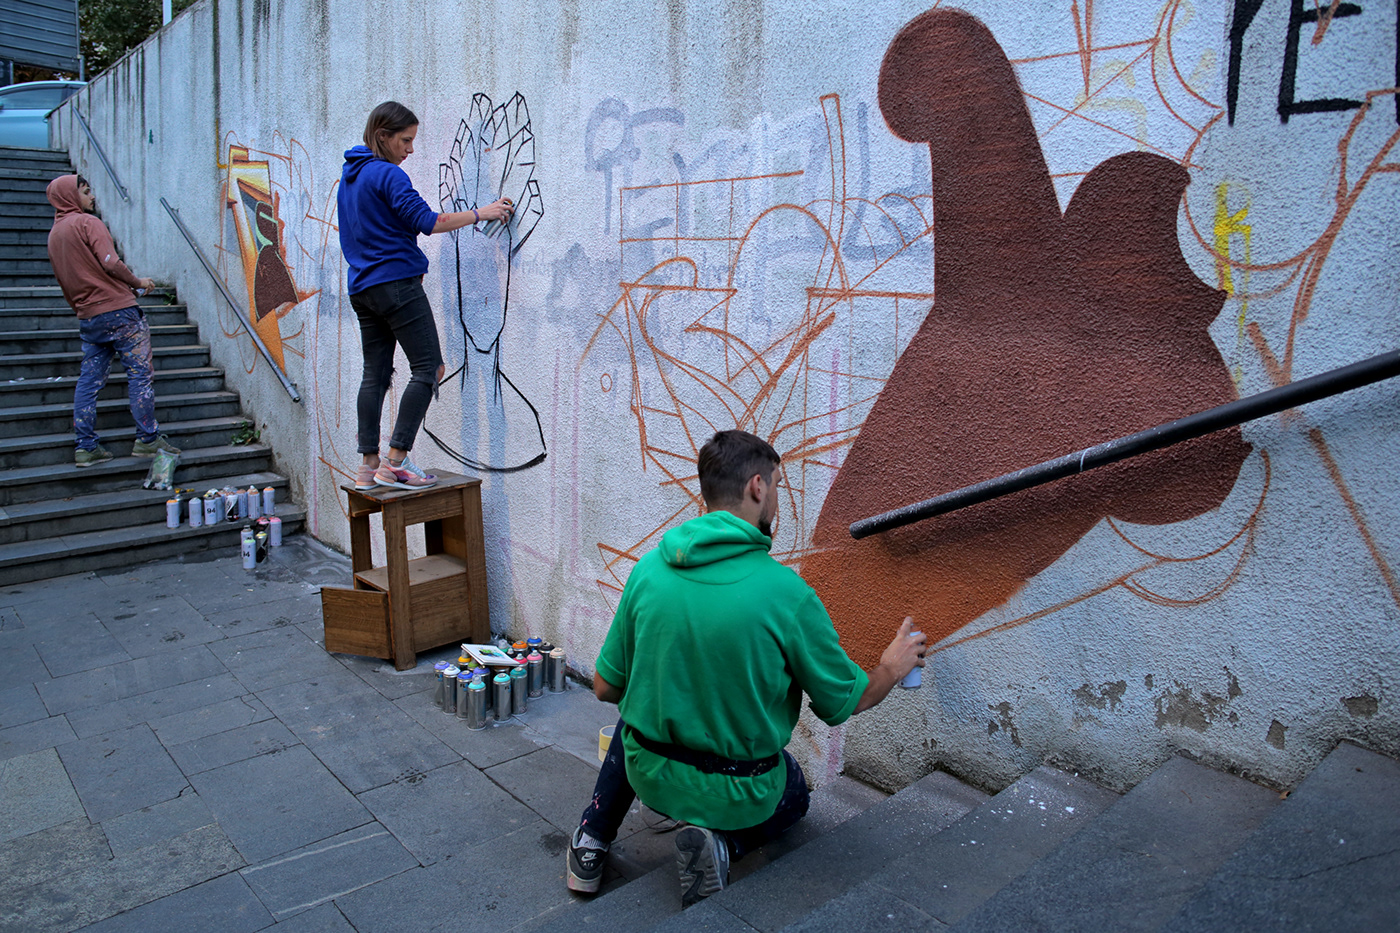 Collaboration ukraine tbilisi Georgia improvisation wallart Graffitiart wallpainting